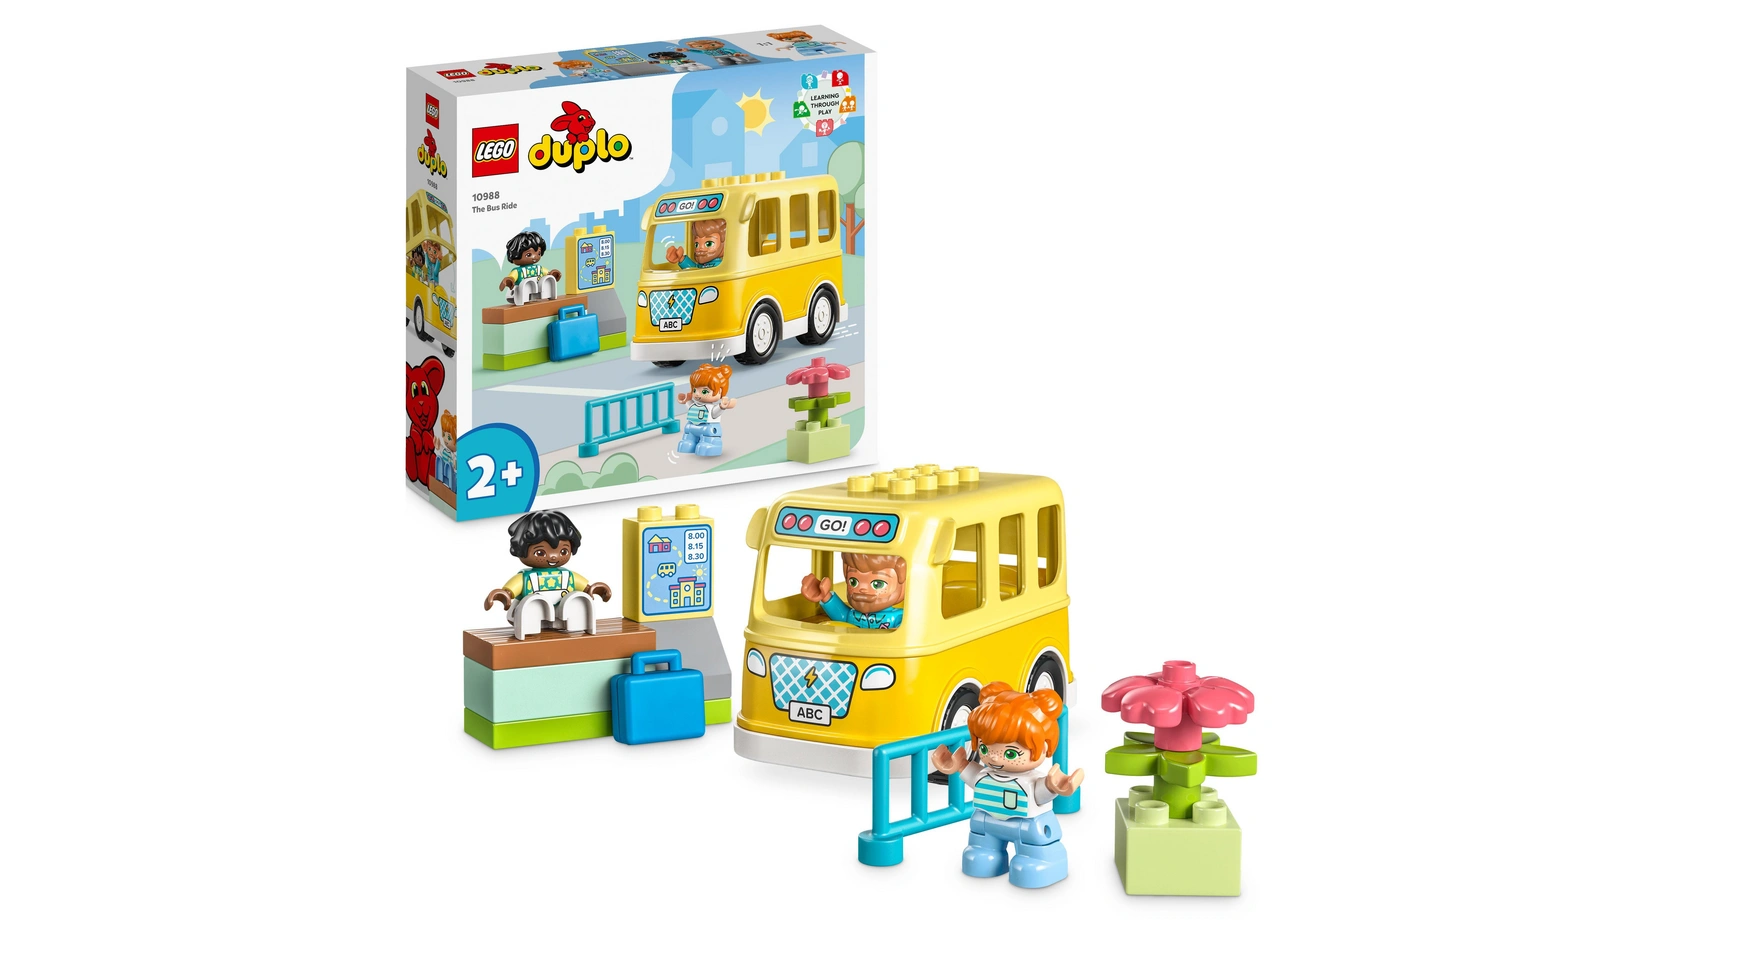 Lego DUPLO Поездка на автобусе, развивающая игрушка с игрушечным автобусом lego duplo town 117 дет 10970